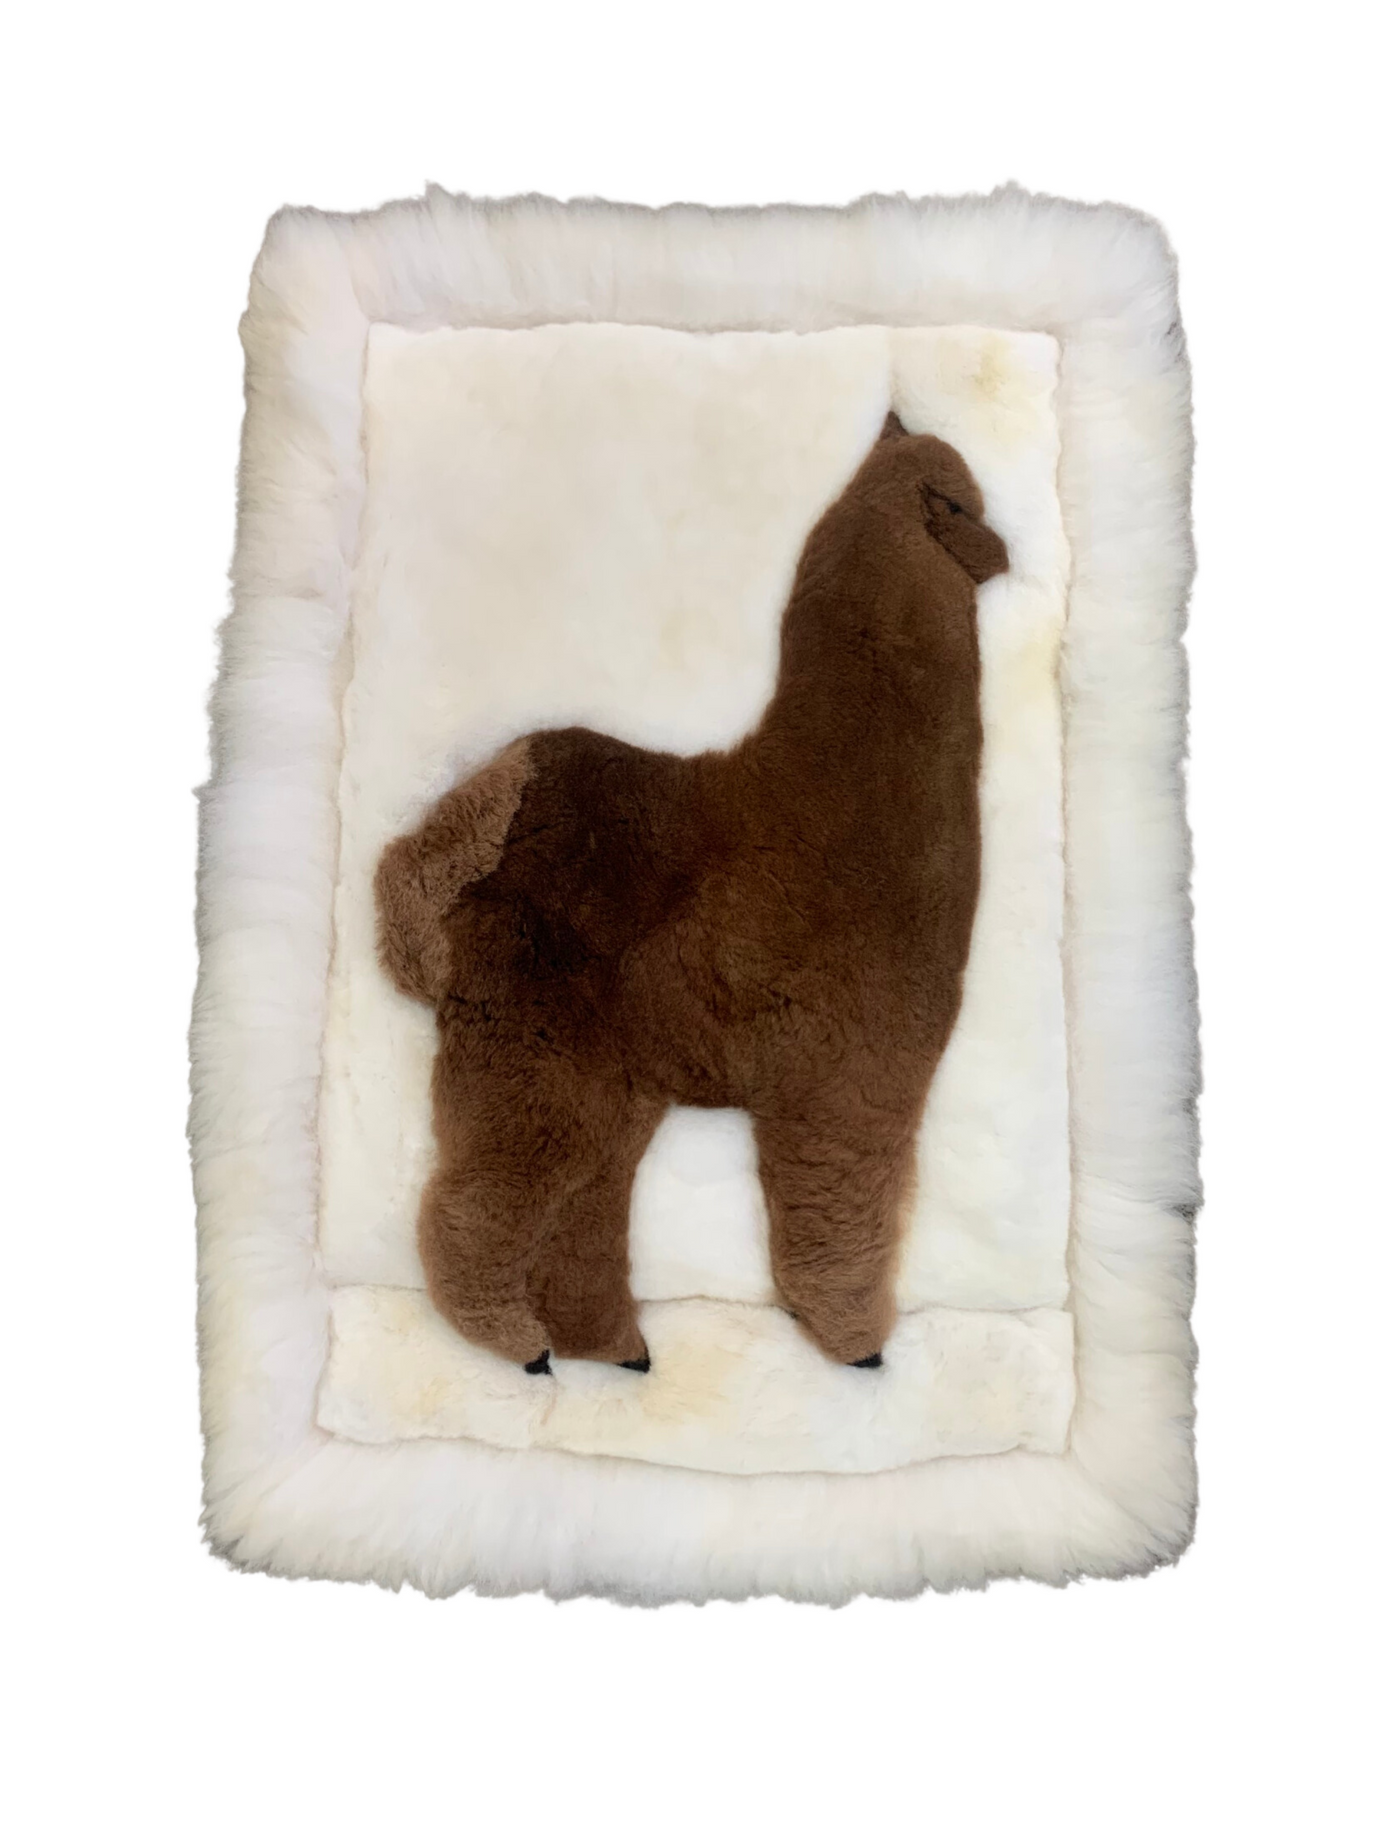 Huacaya Pillow (Alpaca)